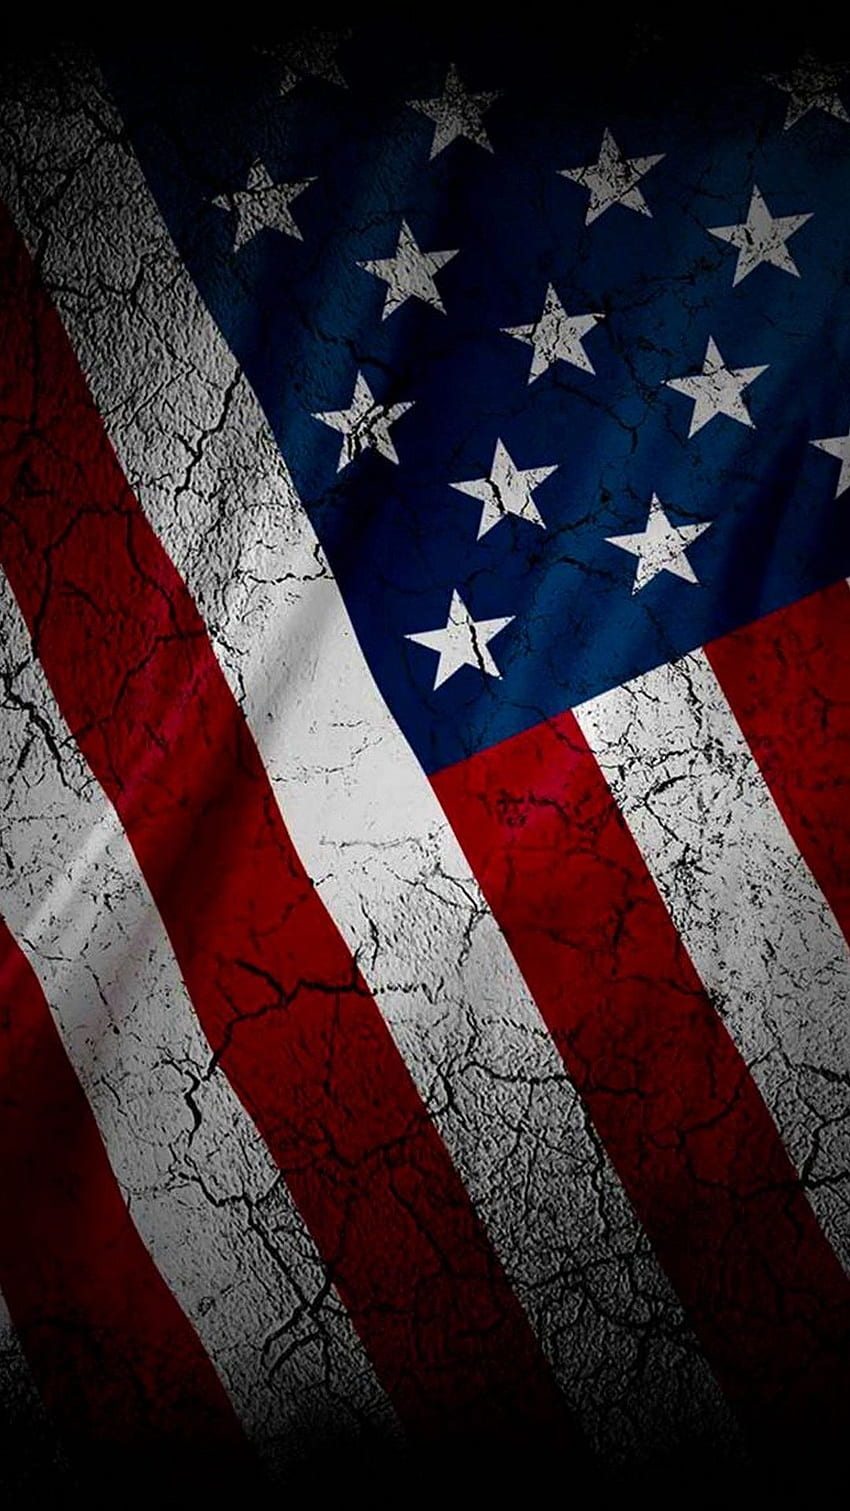 Ponsel Bendera Amerika Hitam. Bendera Amerika, iPhone bendera Amerika, latar belakang bendera Amerika, Bendera Amerika Gelap wallpaper ponsel HD